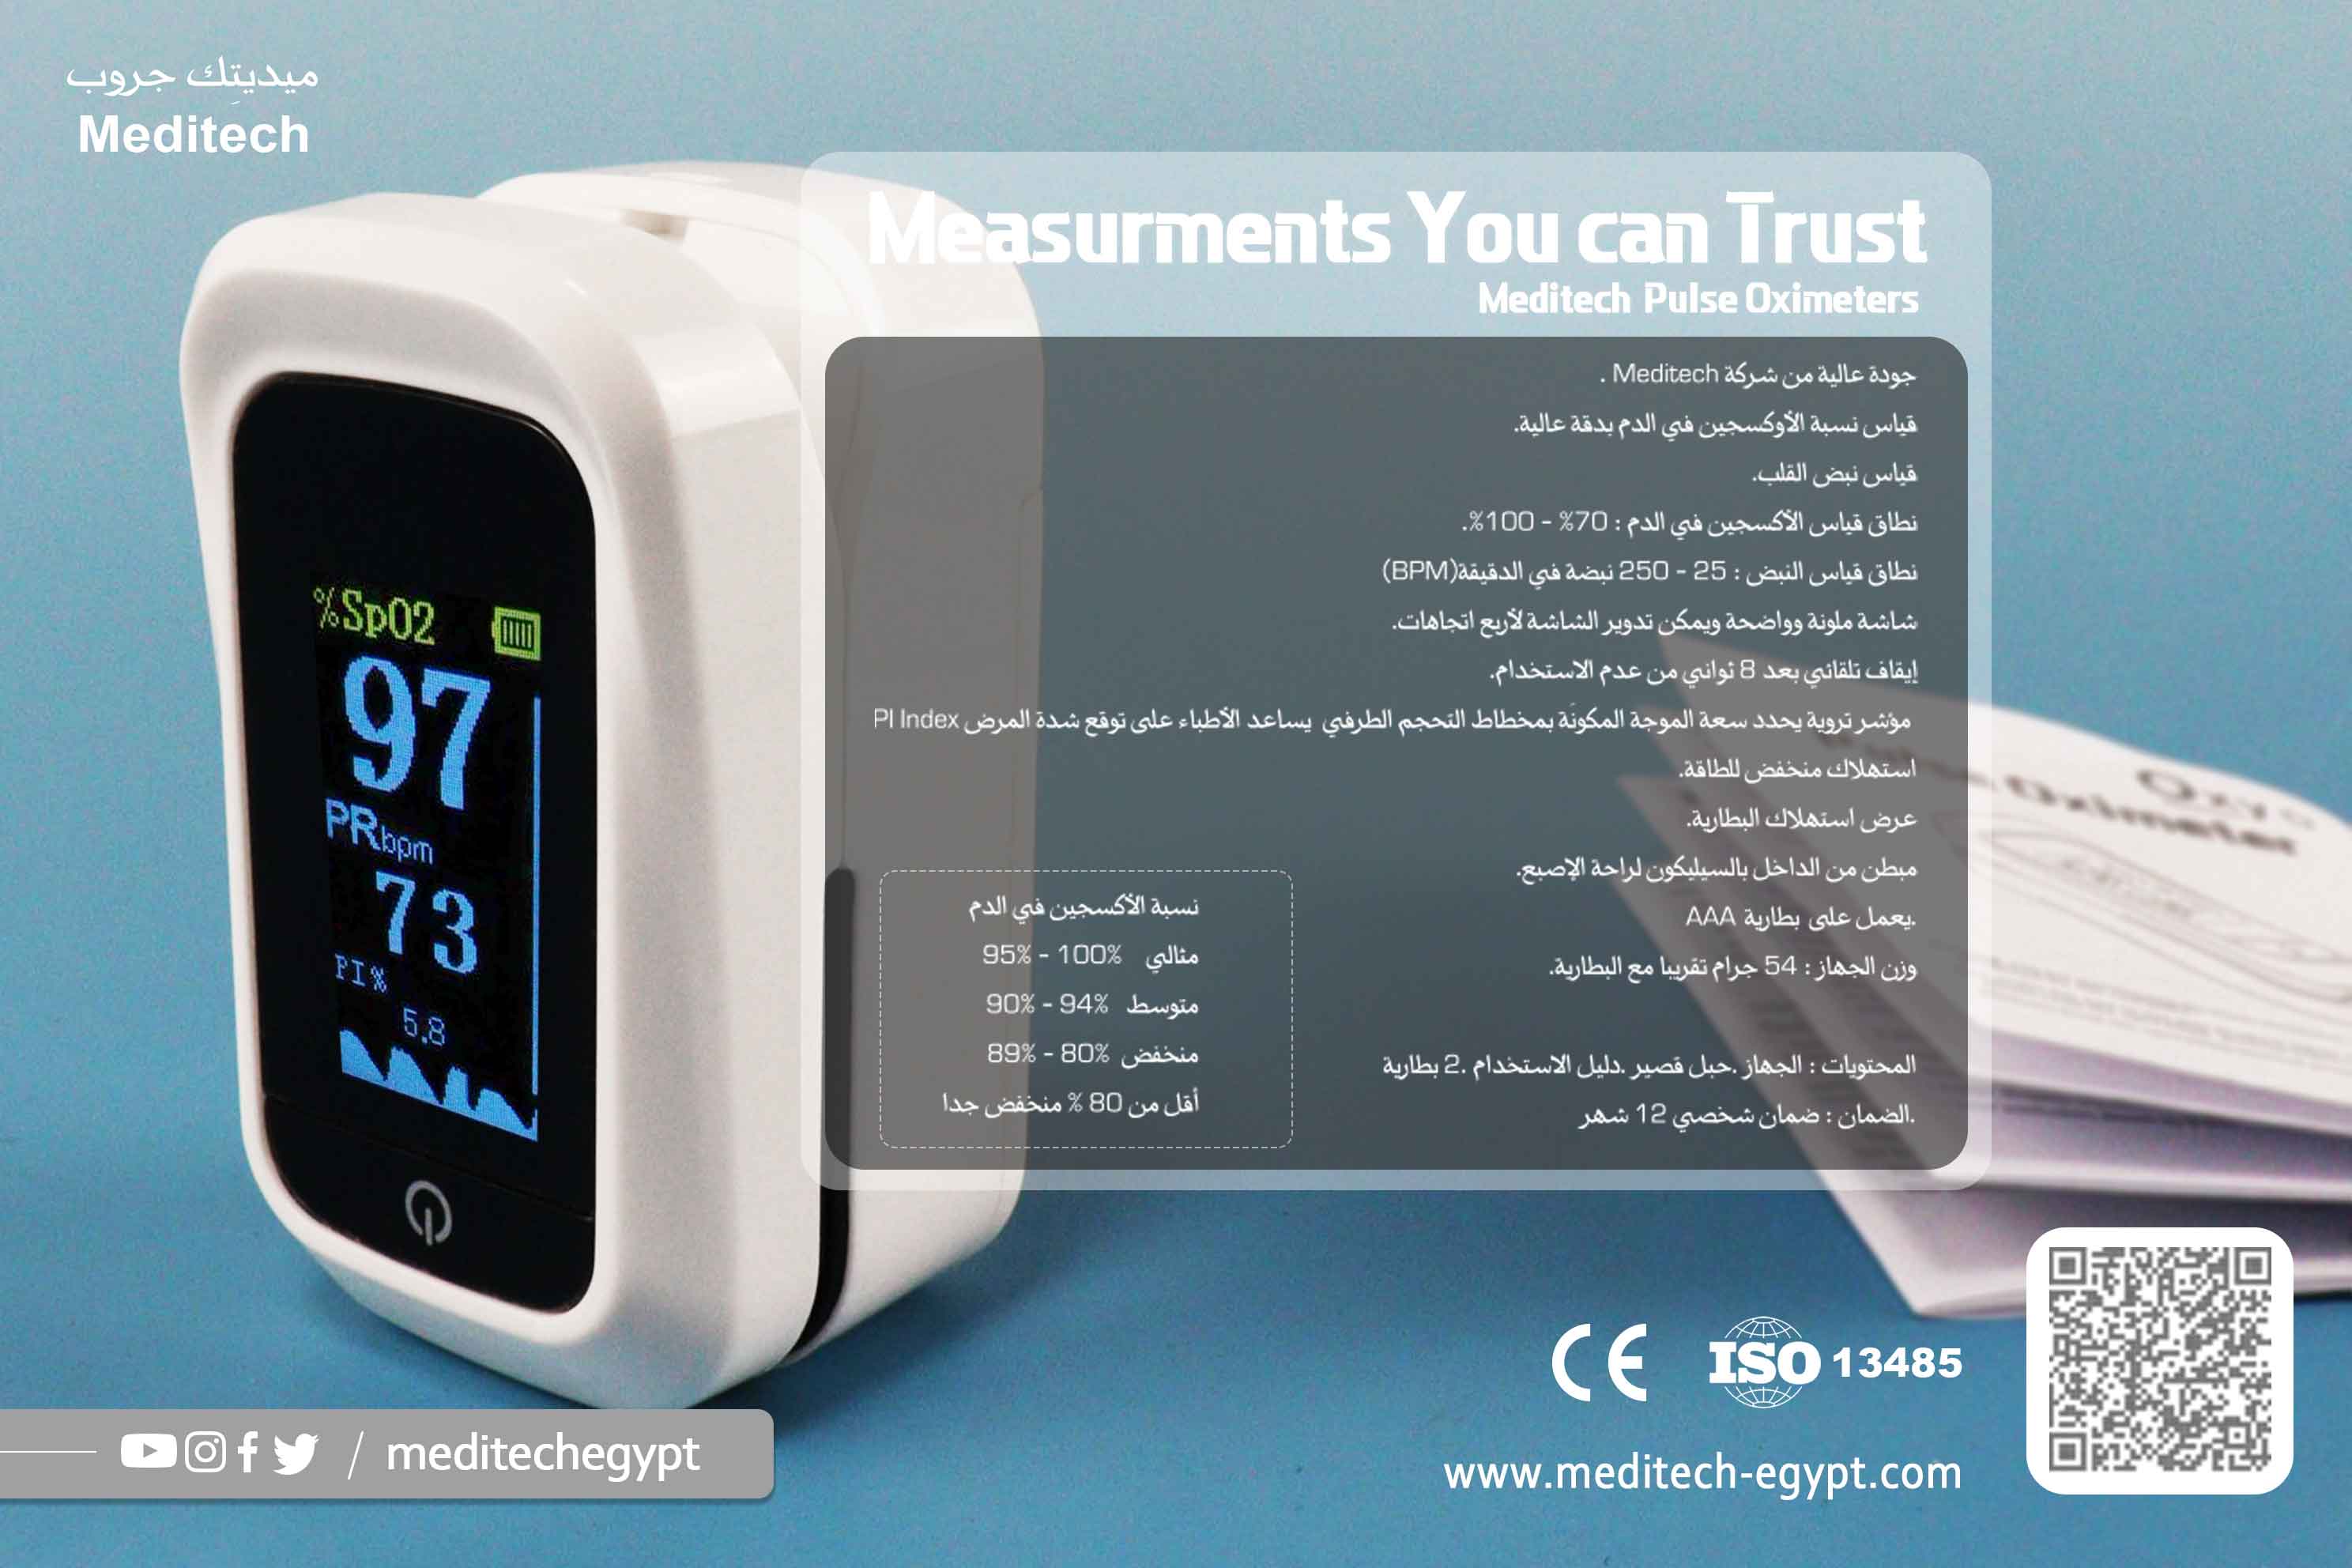 جهاز قياس نبض الأصابع  - جهاز تشبع الأكسجين في الدم - جهاز قياس أكسجين SPO2 - جهاز استشعار أكسجين محمول مع بطاريات متضمنة - شاشة تشبع 